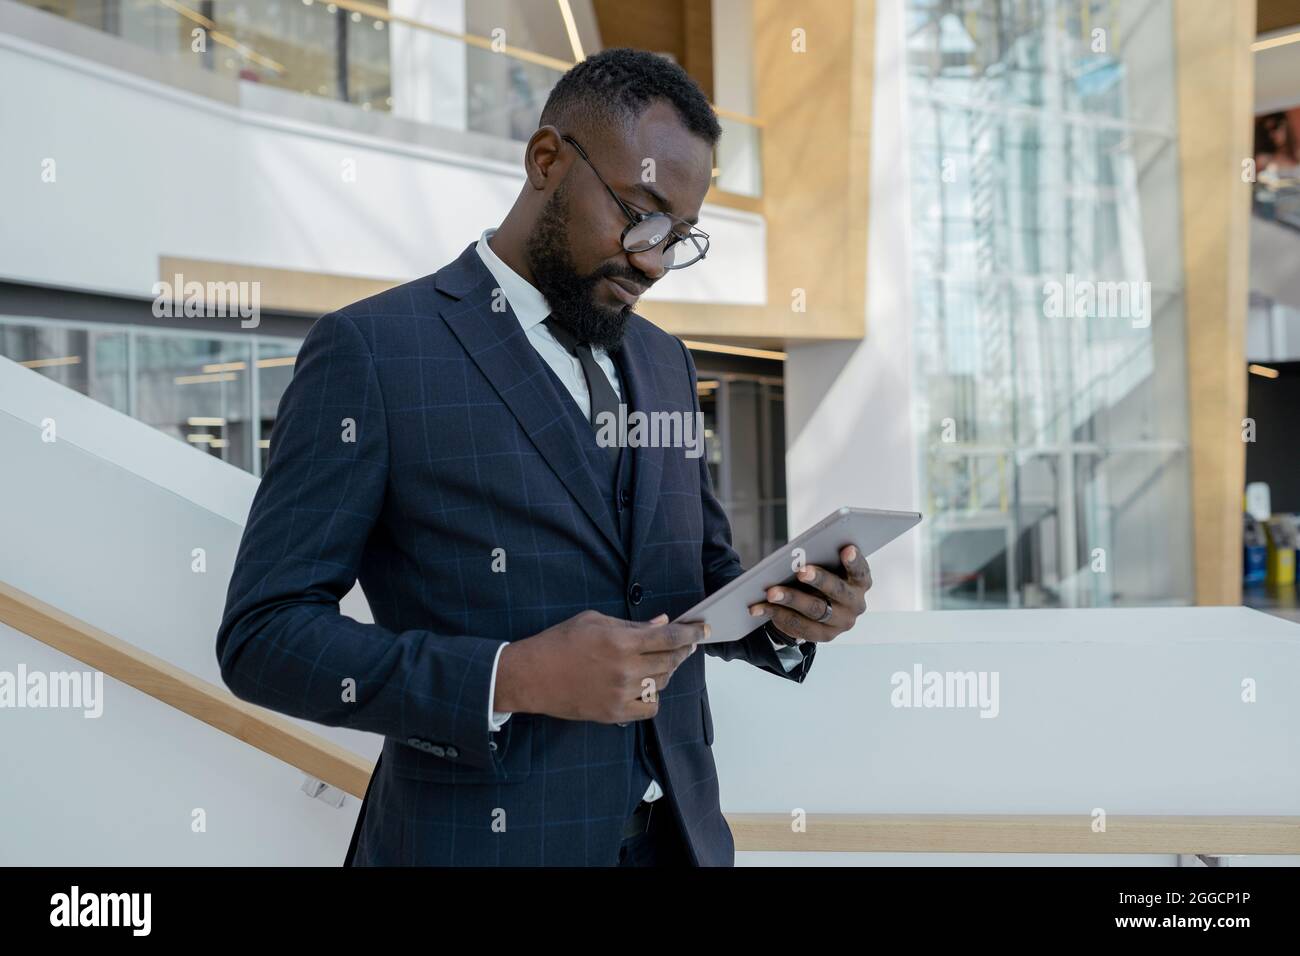 Giovane uomo d'affari che guarda le notizie online sul display del tablet mentre si trova in un ampio business center Foto Stock